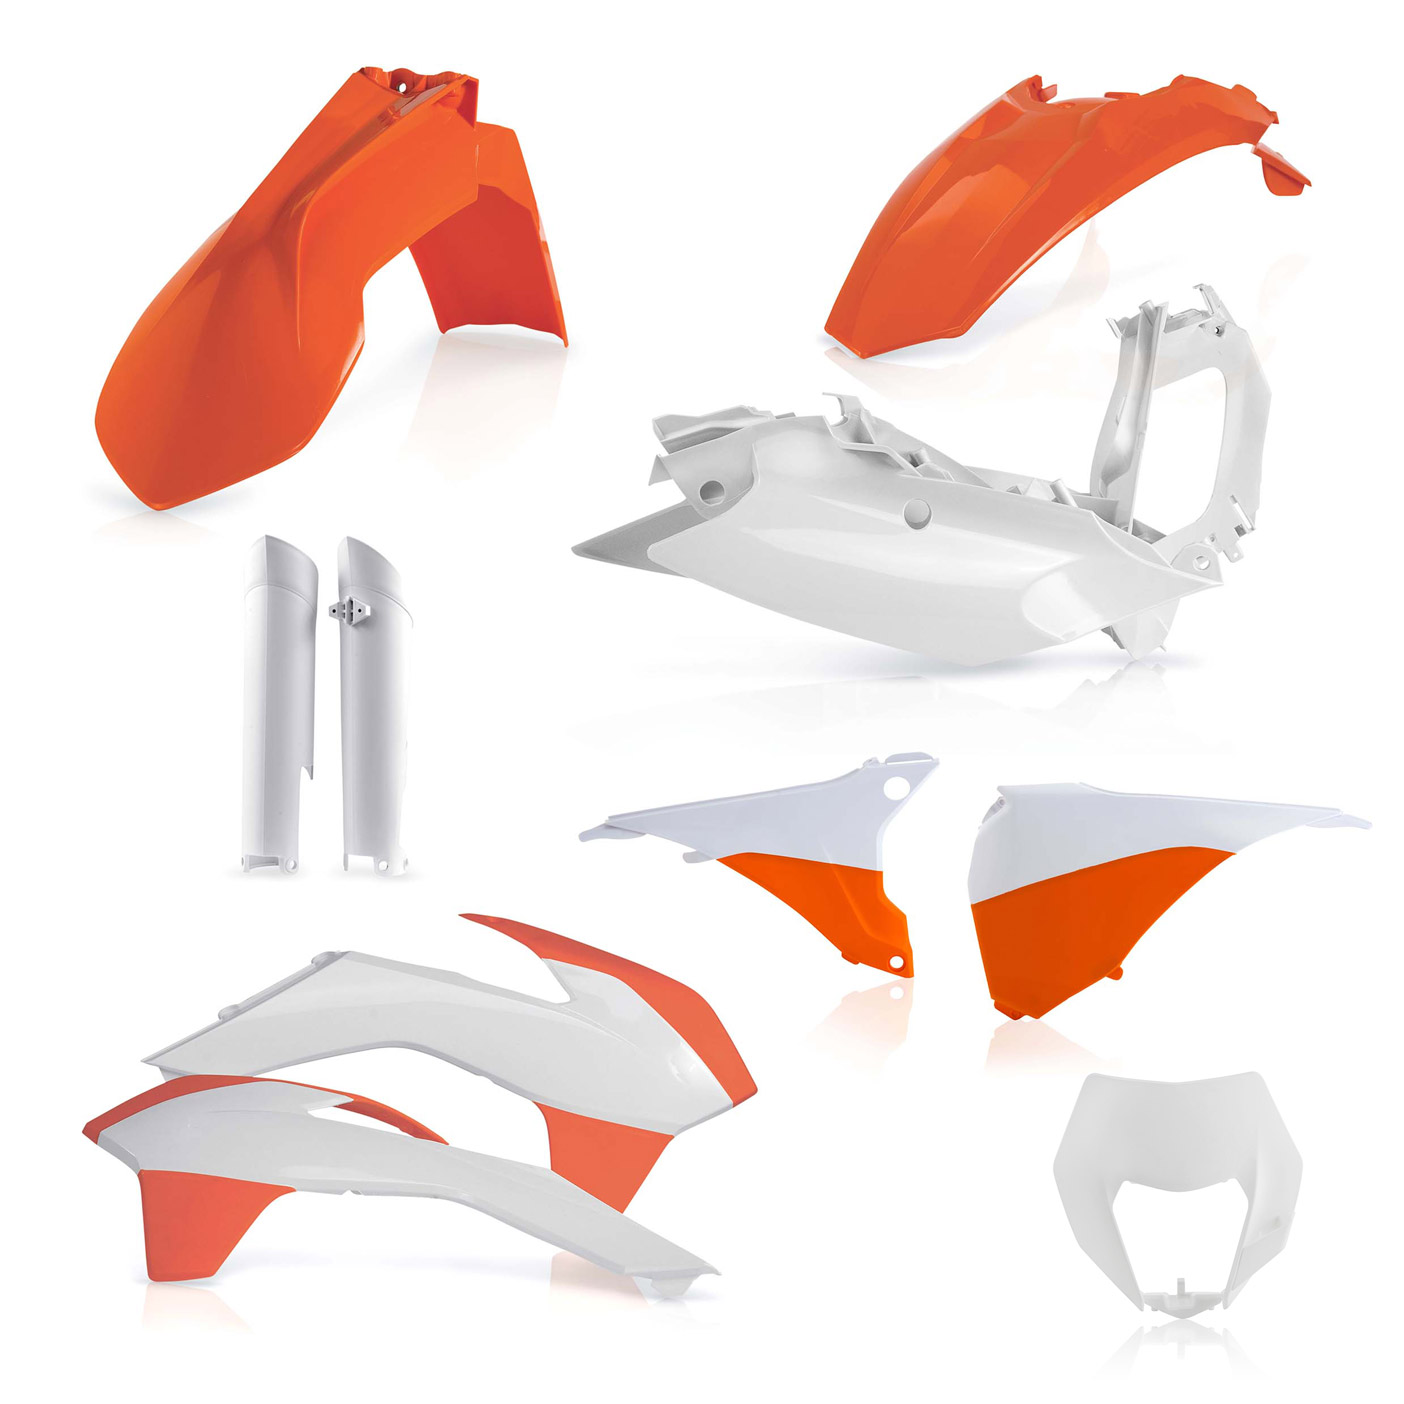 Plastikteile für deine KTM EXC und EXC-F in OEM15. Bestehend aus Frontkotflügel, Heckkotflügel, Tankspoiler, Nummerntafel, Seitenteilen, Gabelschoner und Lampenmaske